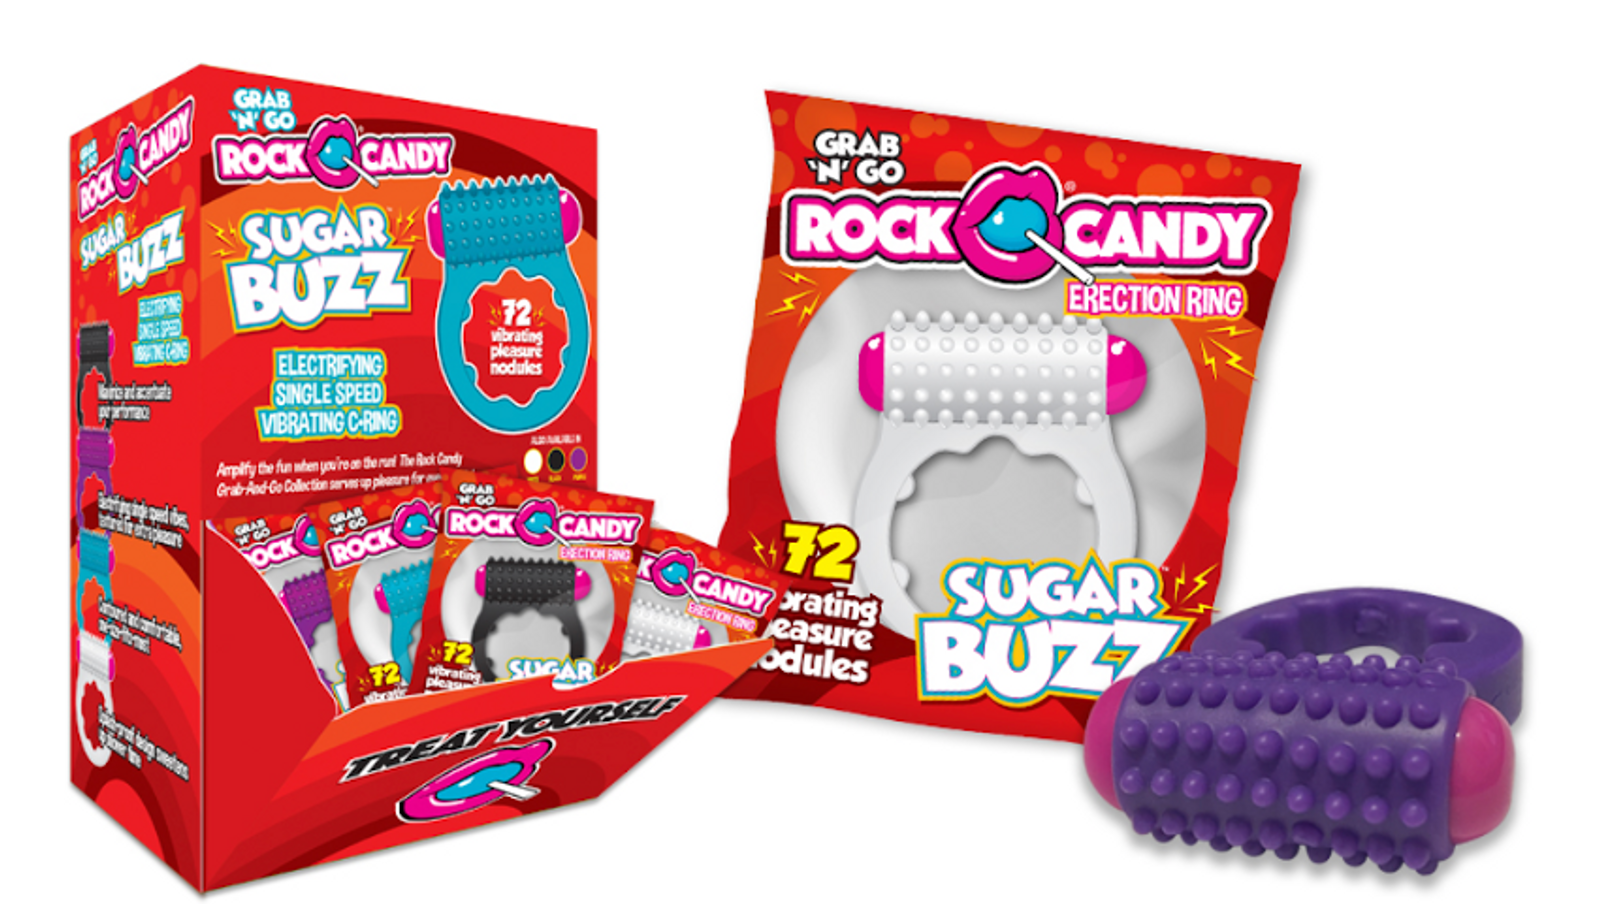 Rock Candy Toys Introduces ‘Sugar Buzz’ Grab-N-Go Display